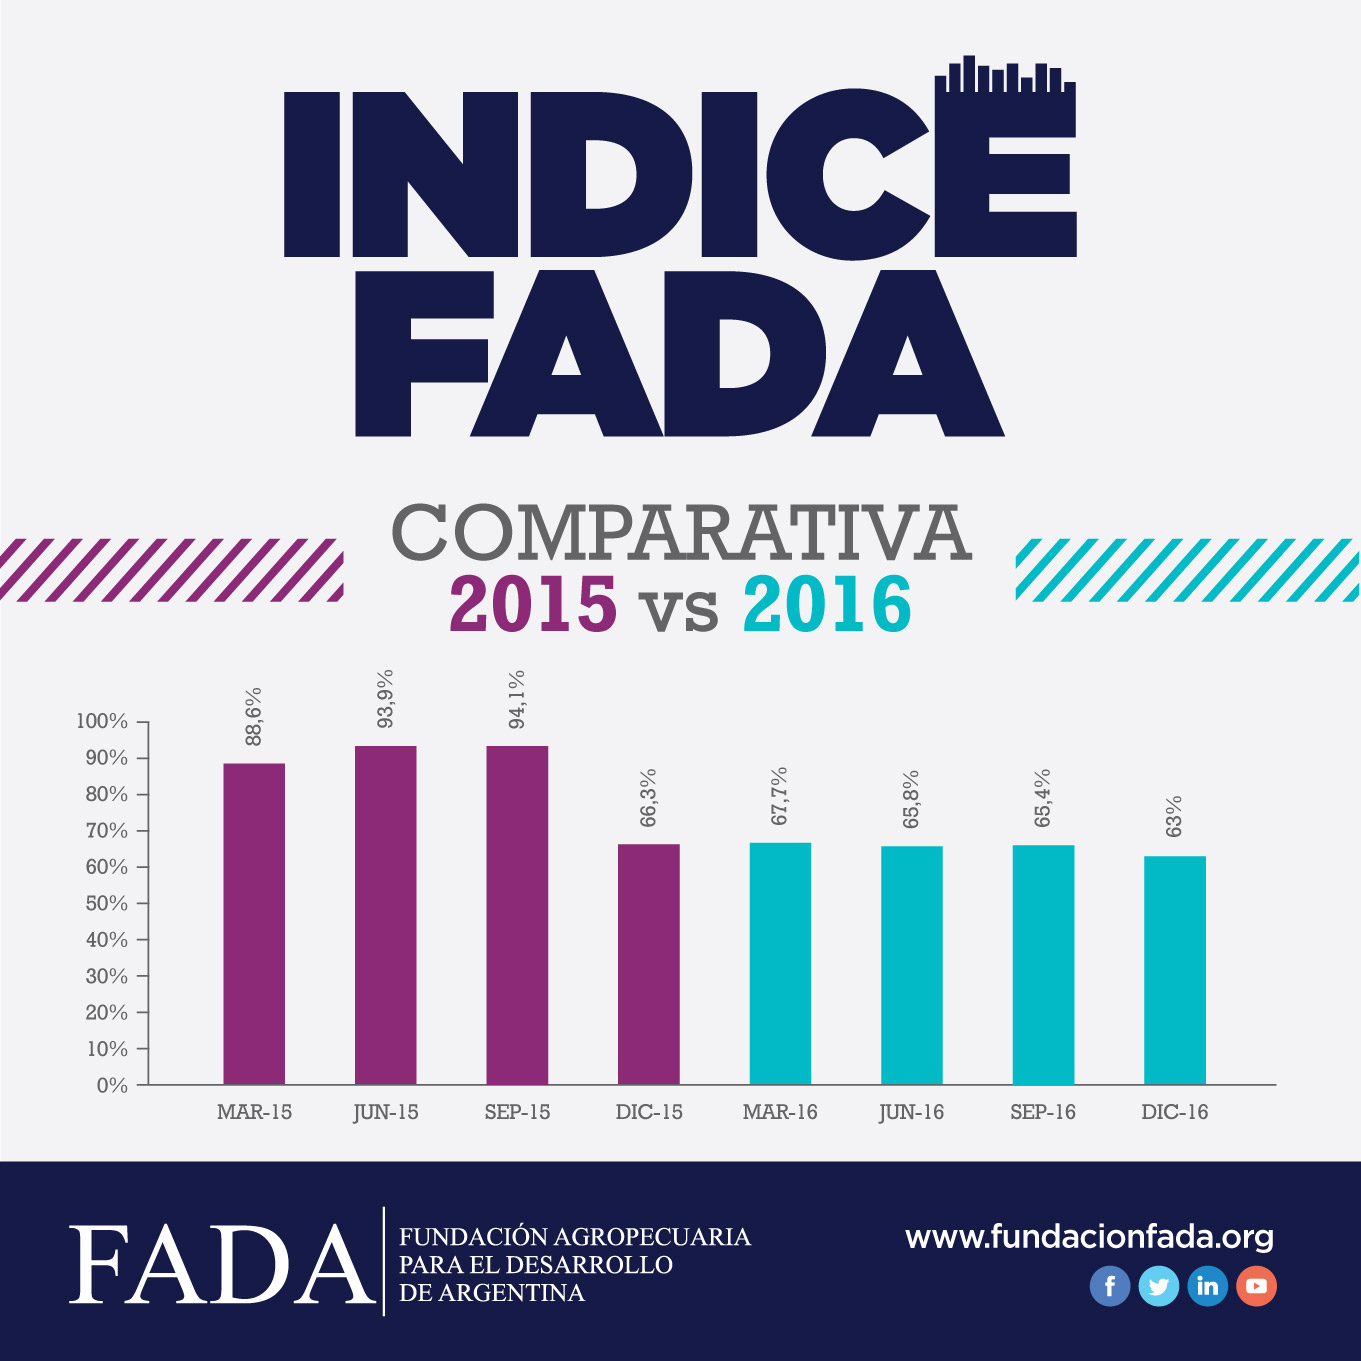 indice-fada-comparacion-anual-15-16